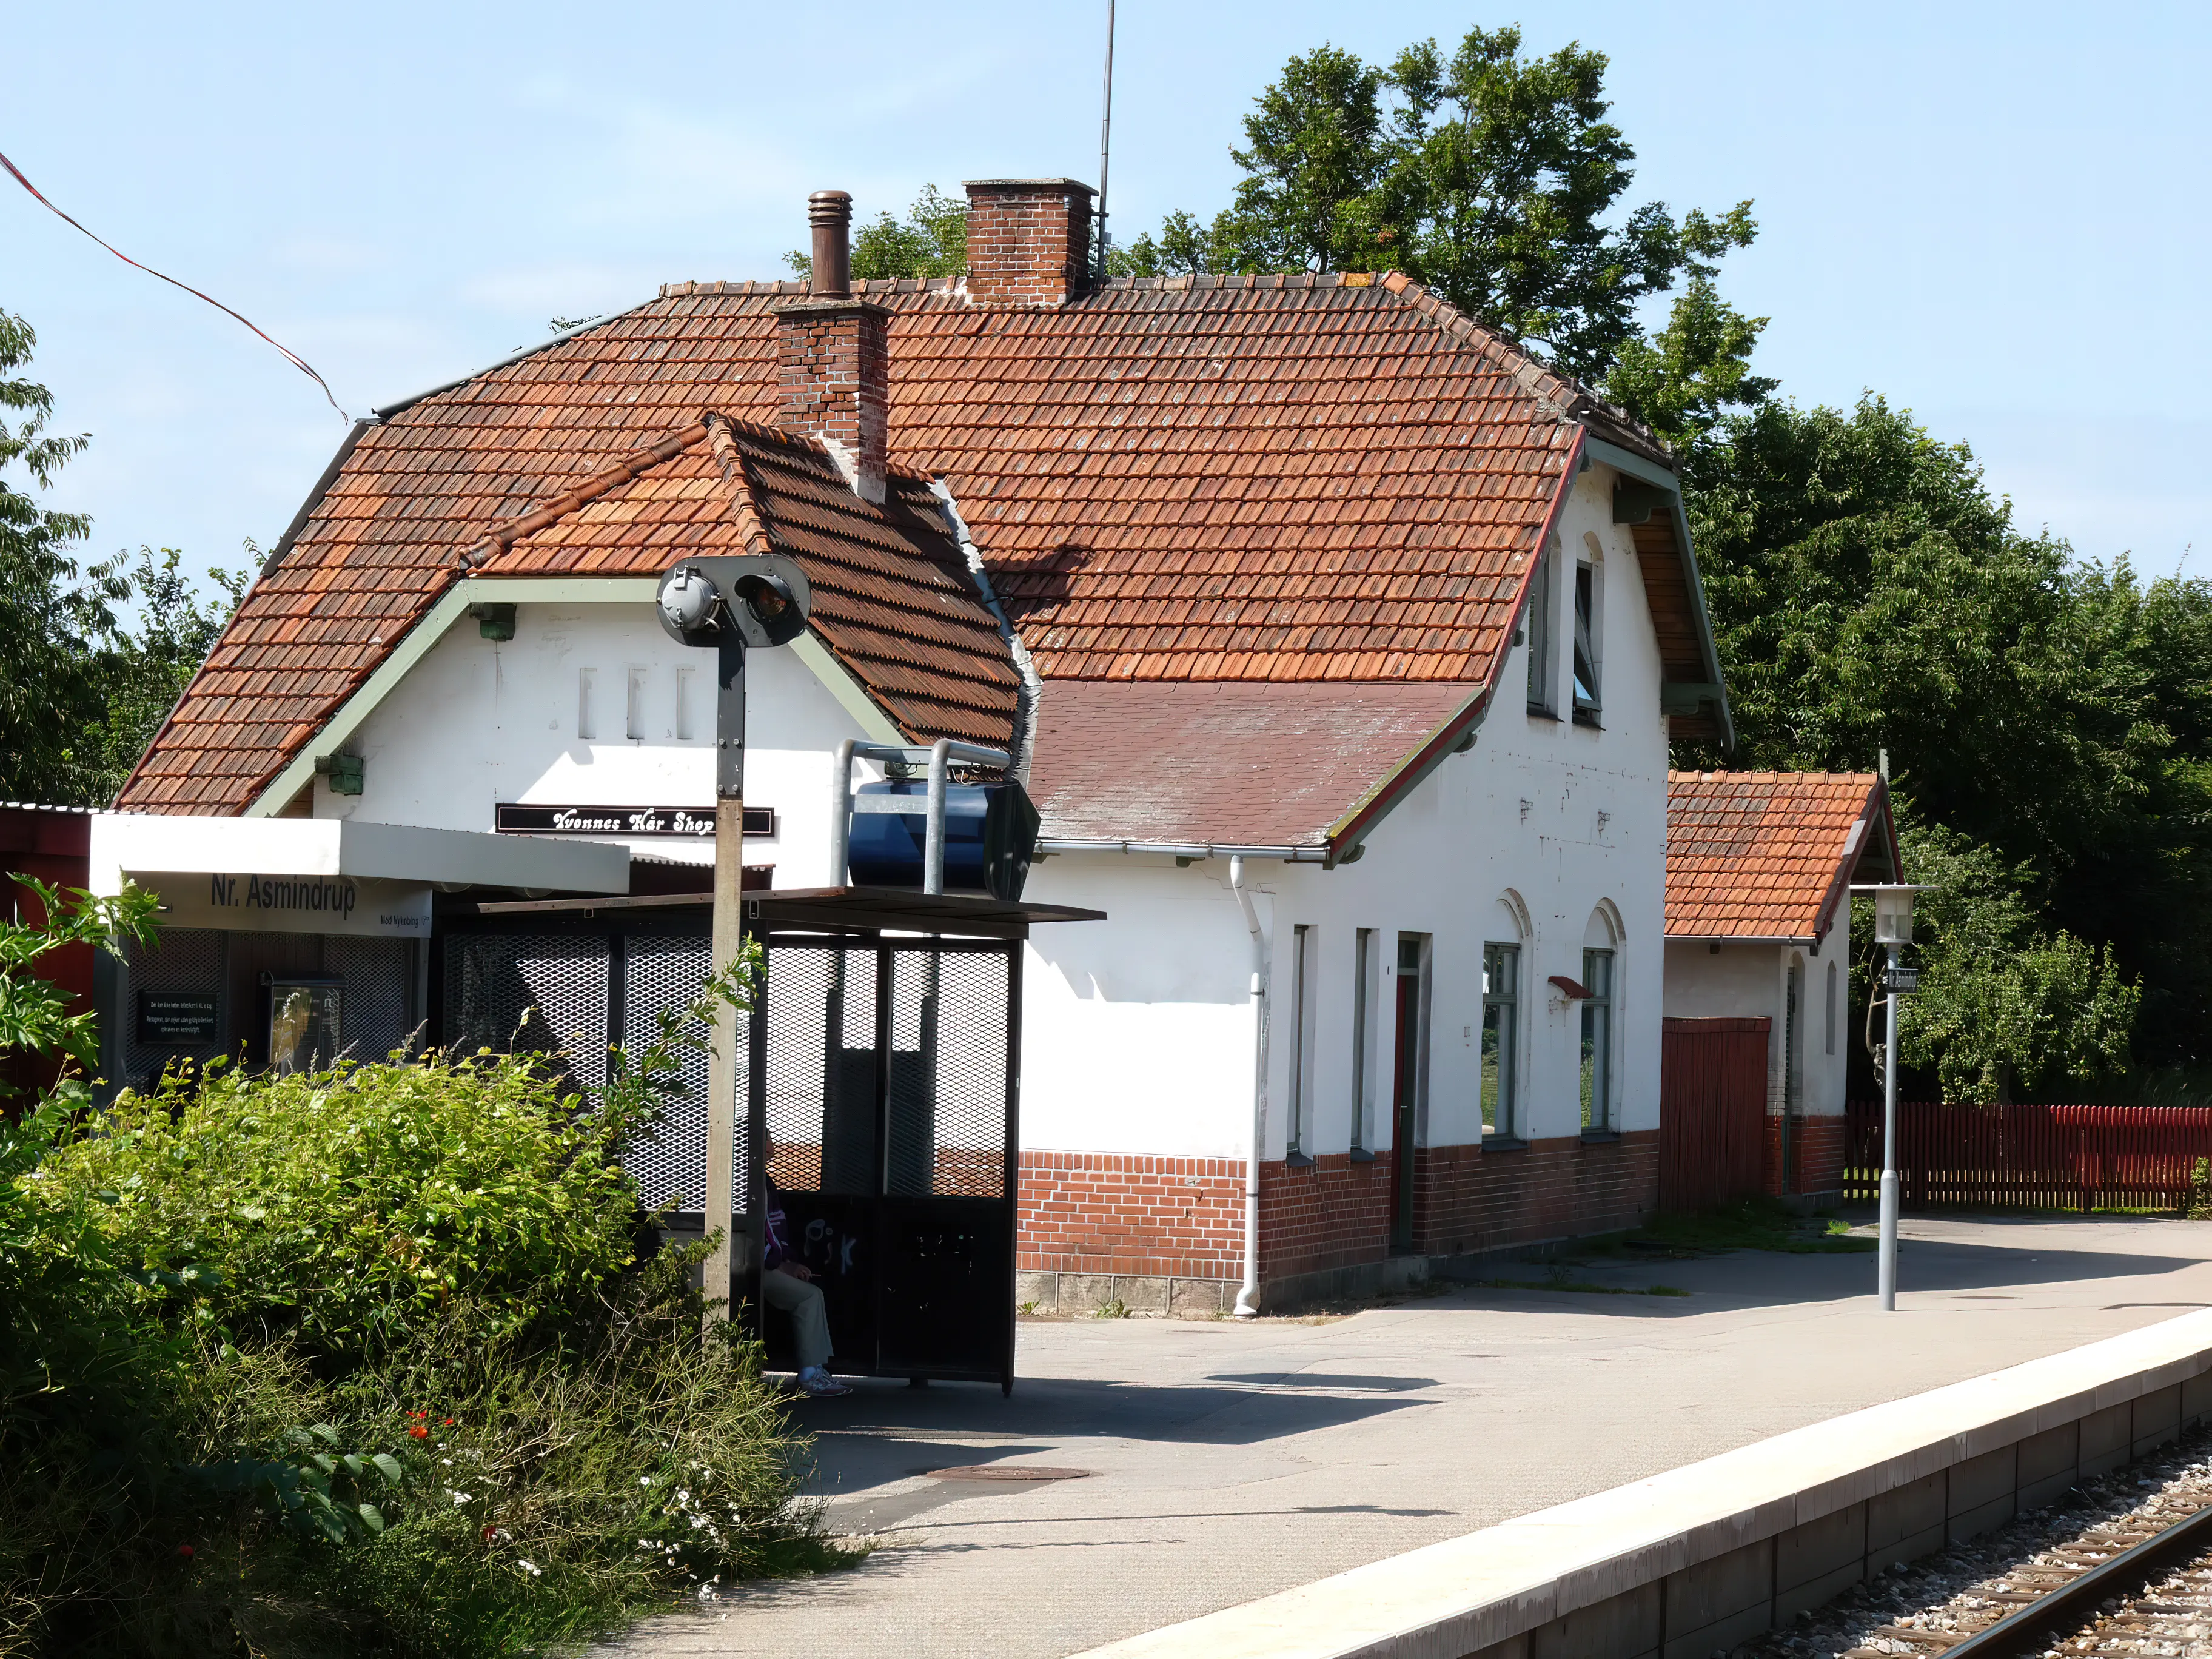 Billede af Nørre Asmindrup Station.